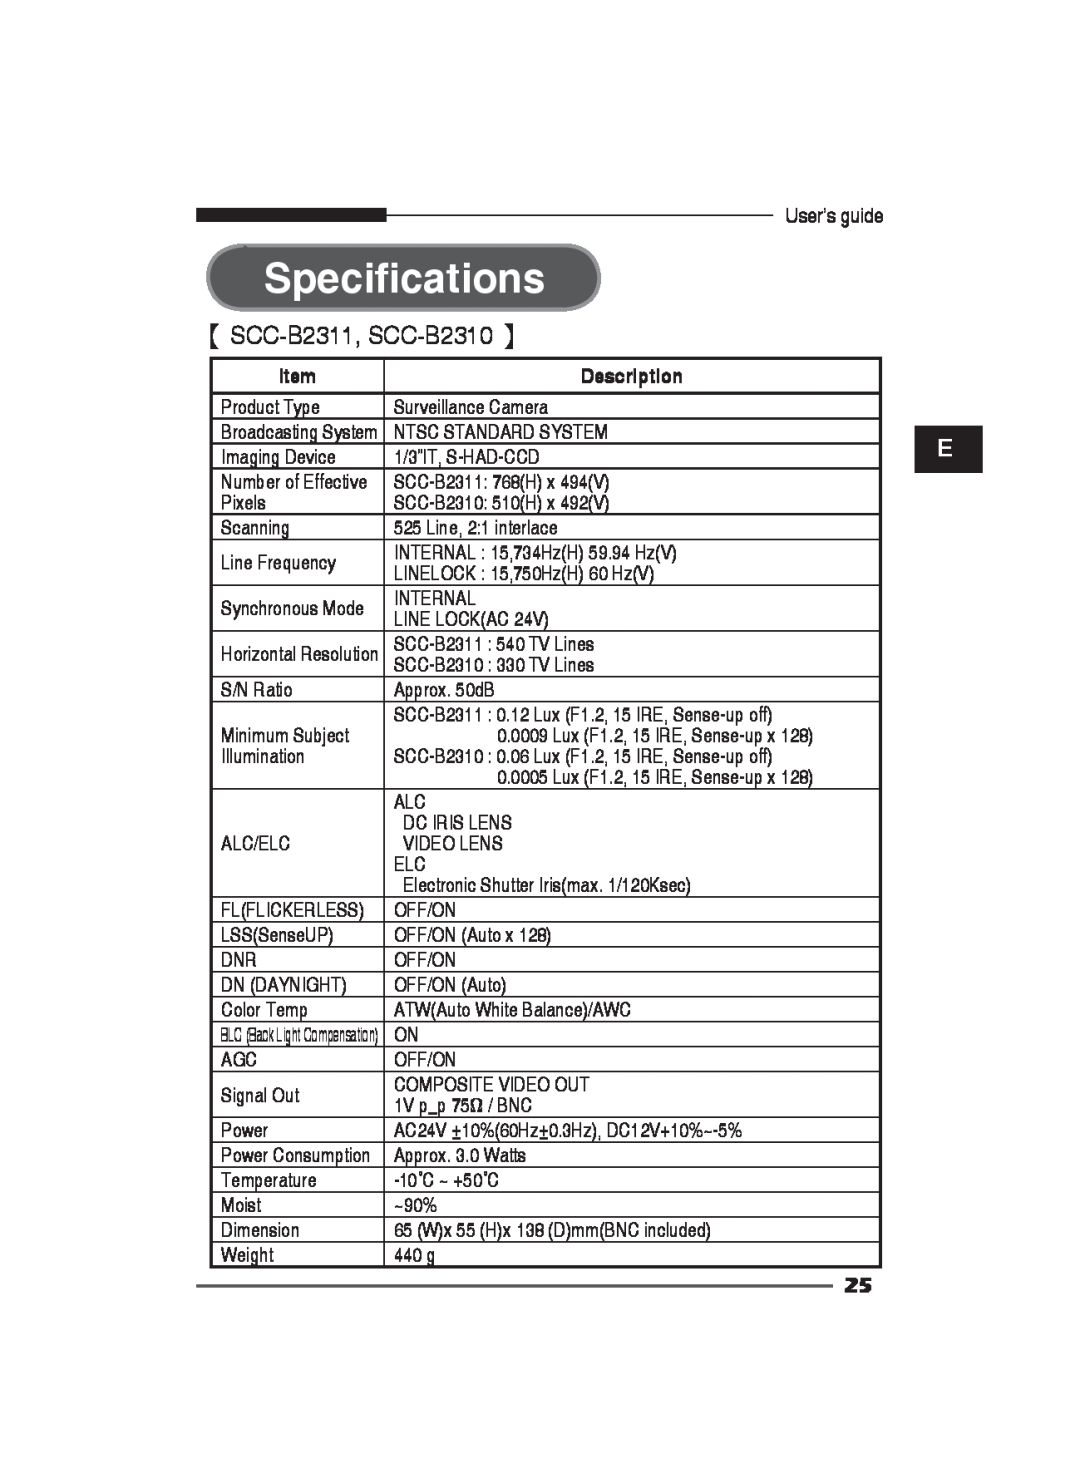 Samsung SCC-B2311P, SCC-B2011P manual Specifications, 【 SCC-B2311, SCC-B2310 】, Description 